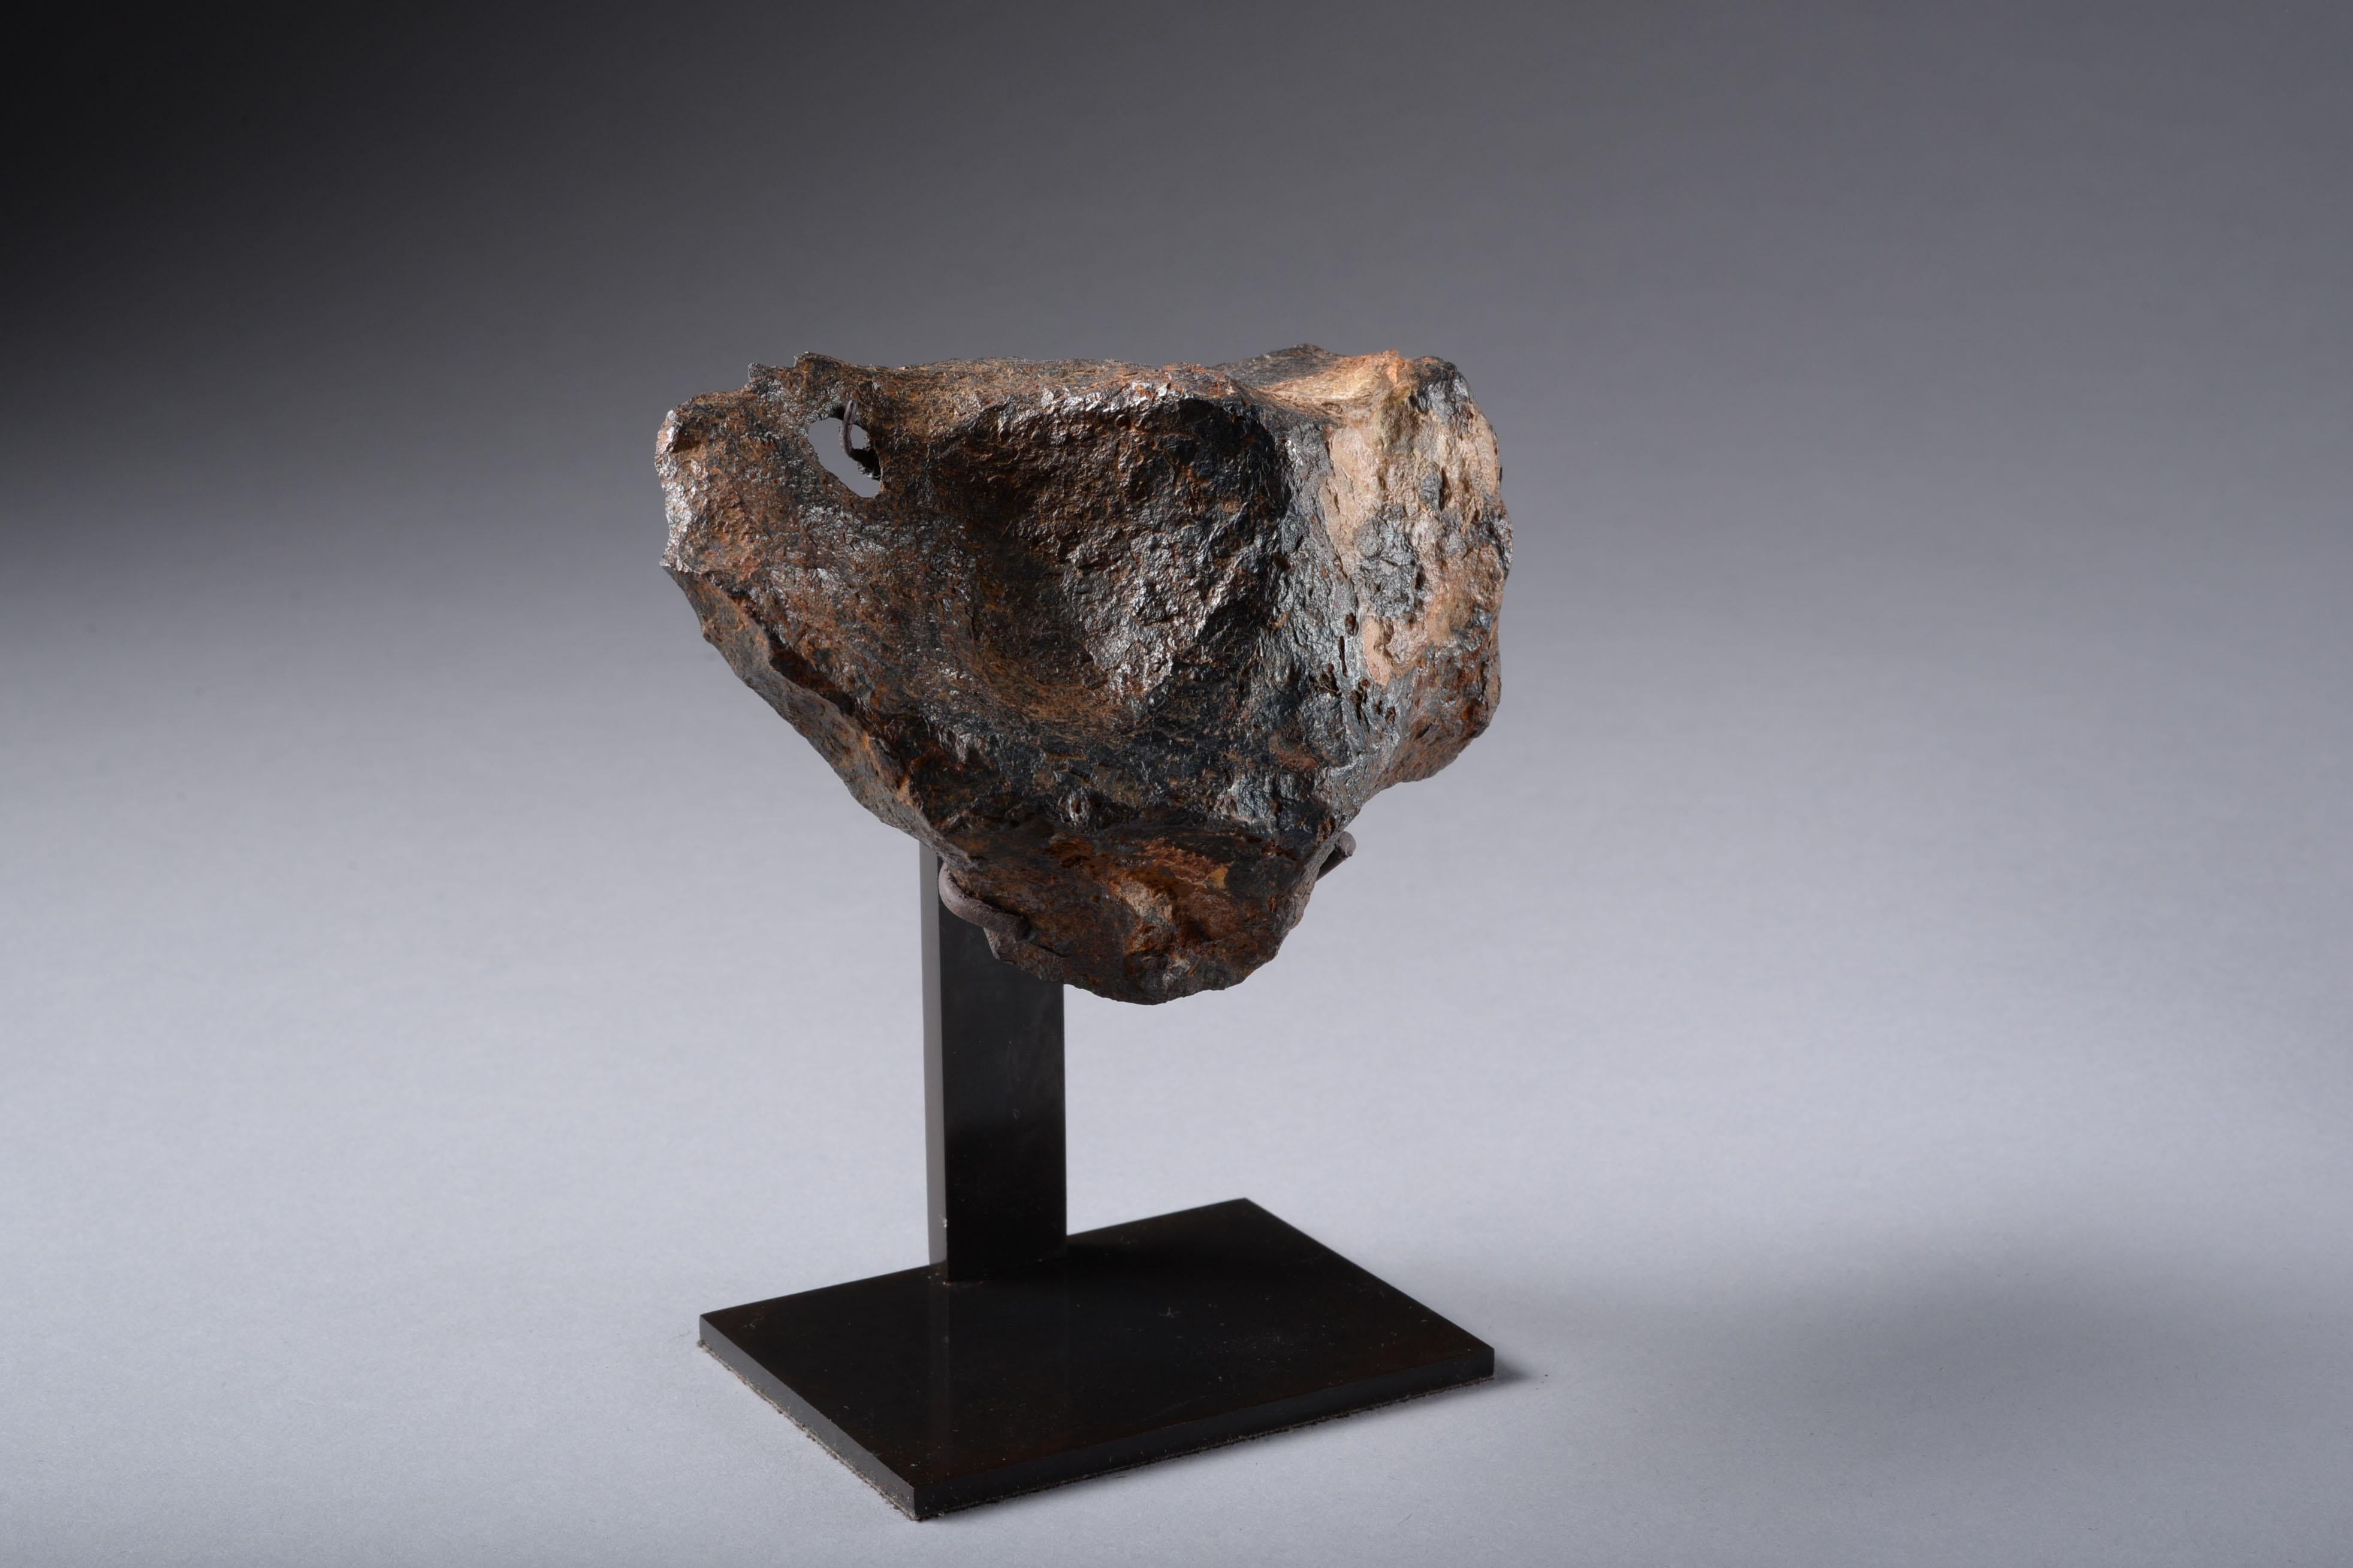 Sculptural Canyon Diablo Iron Octahedrite Meteorite 2